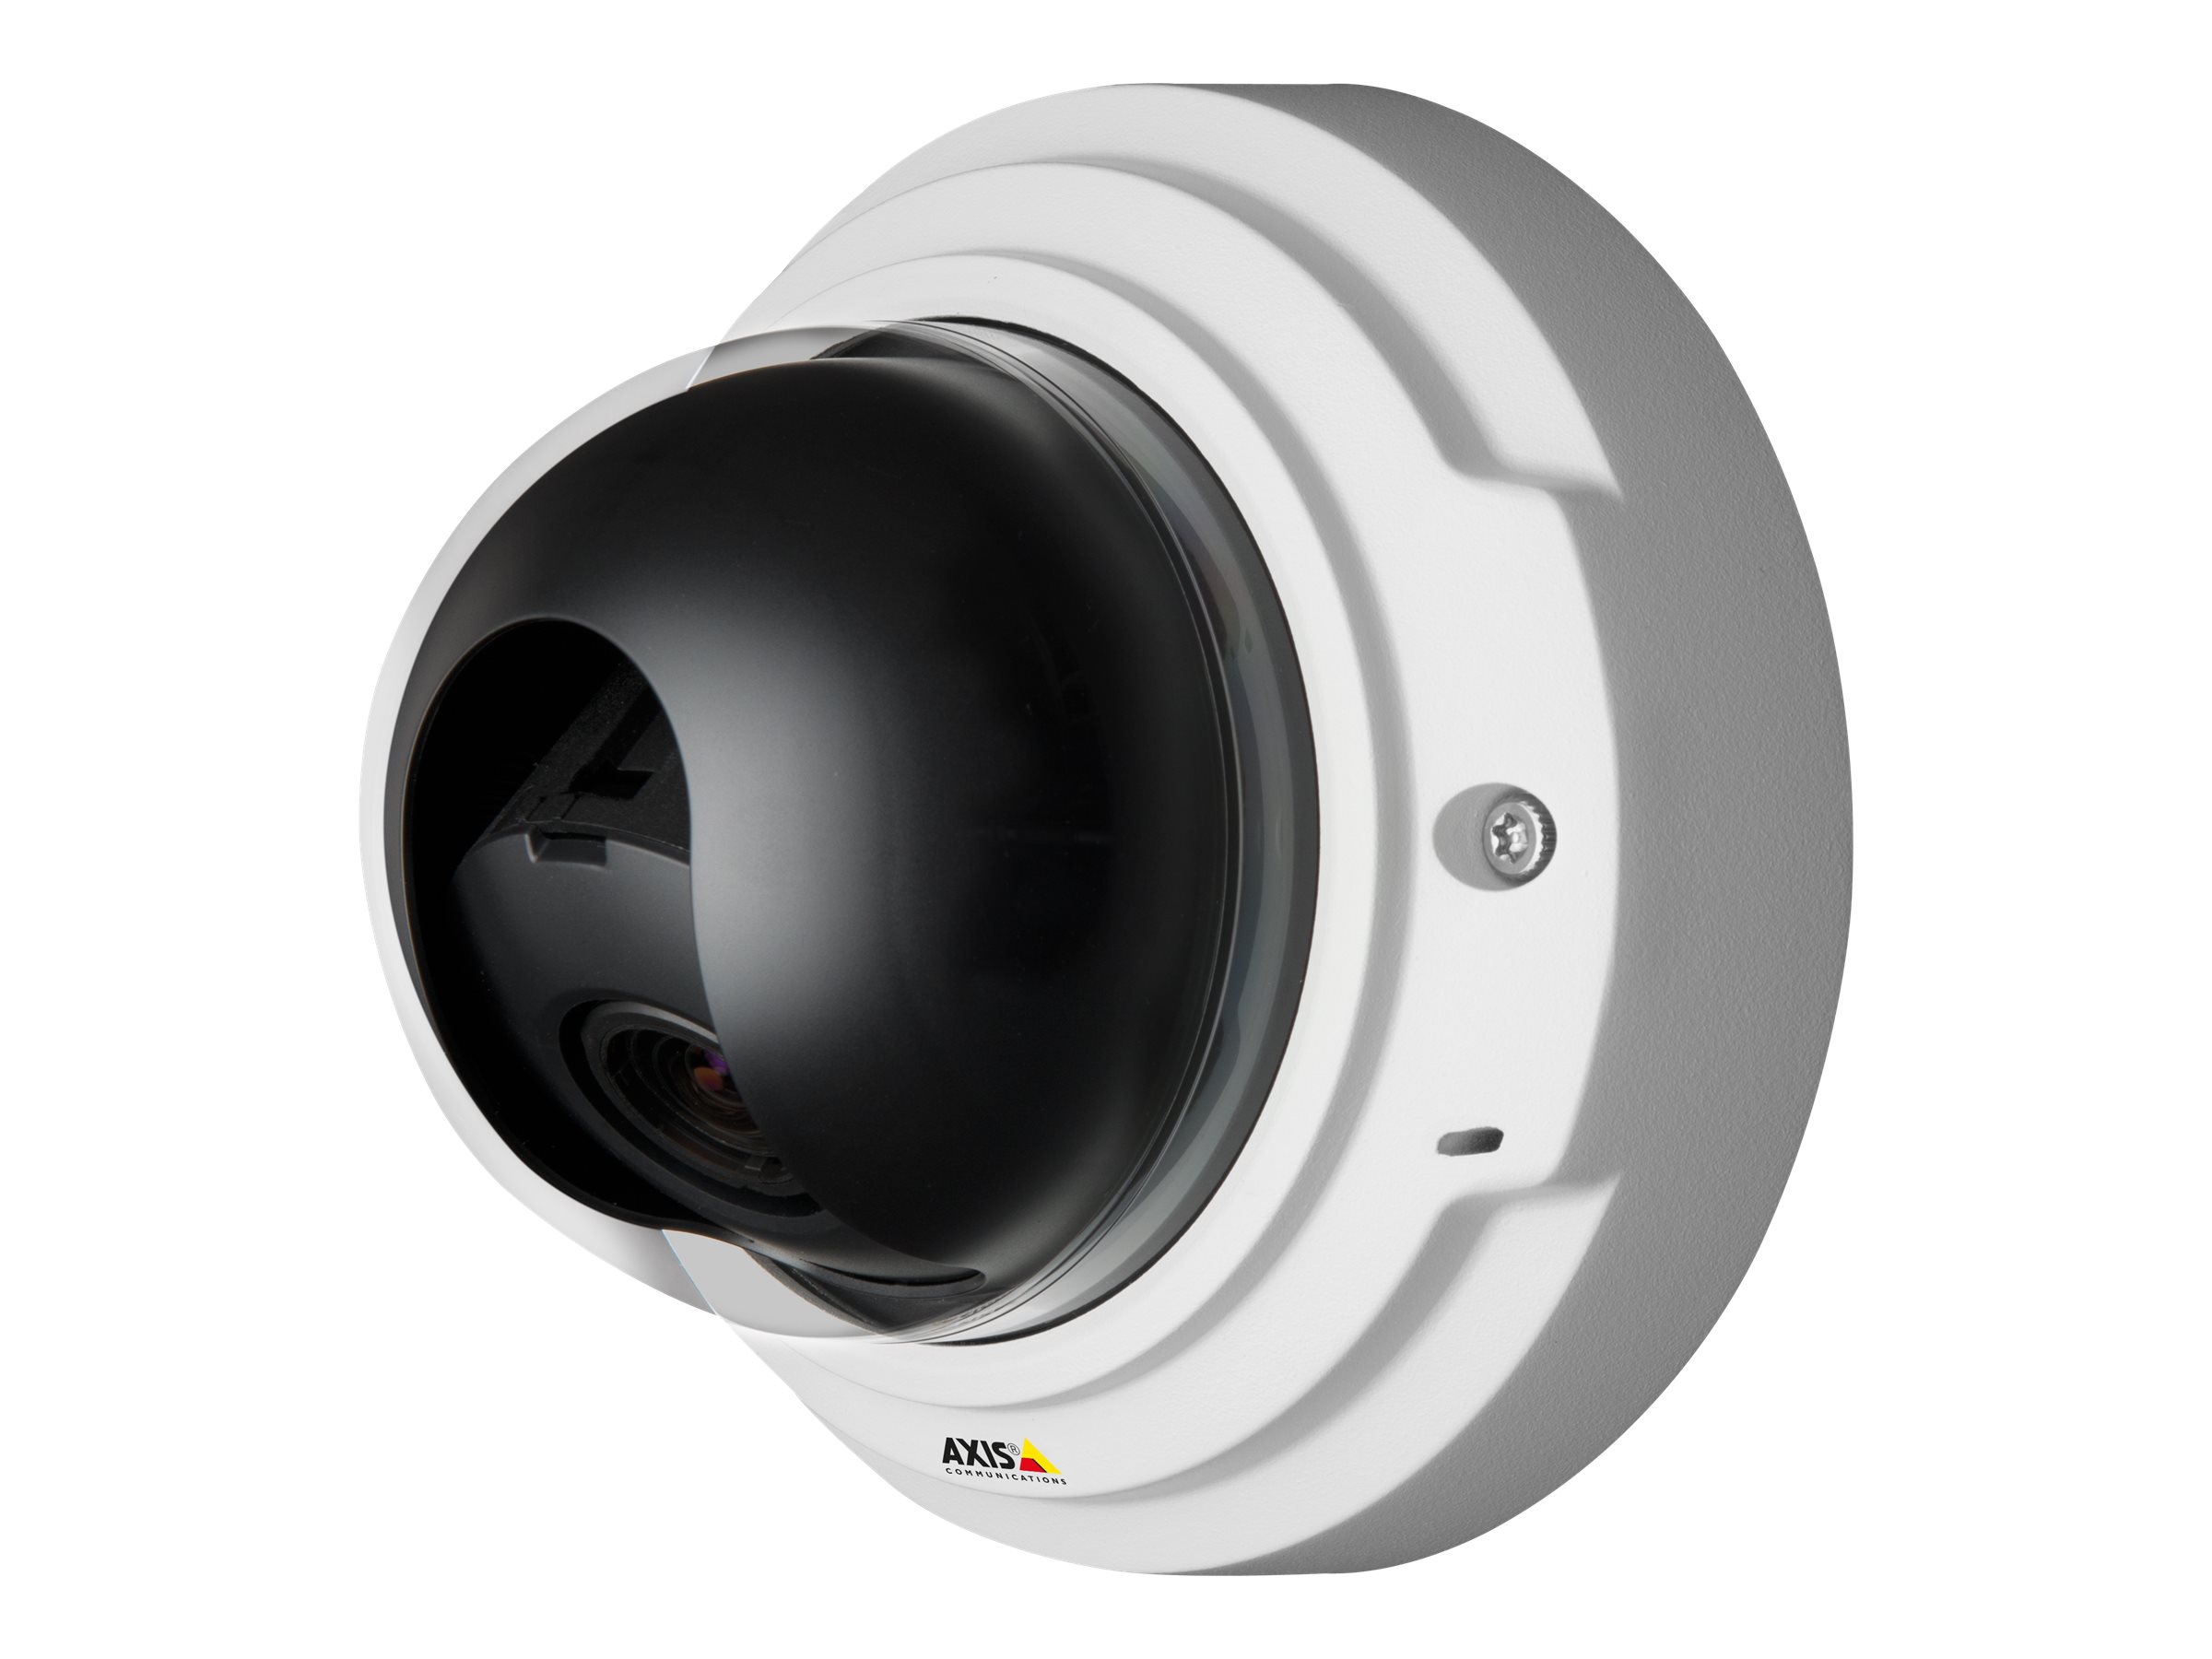 AXIS P3367-V Network Camera - Caméra de surveillance réseau - dôme - à l'épreuve du vandalisme - couleur (Jour et nuit) - 5 MP - 2592 x 1944 - diaphragme automatique - à focale variable - audio - LAN 10/100 - MJPEG, H.264 - PoE - 0406-001 - Caméras de sécurité